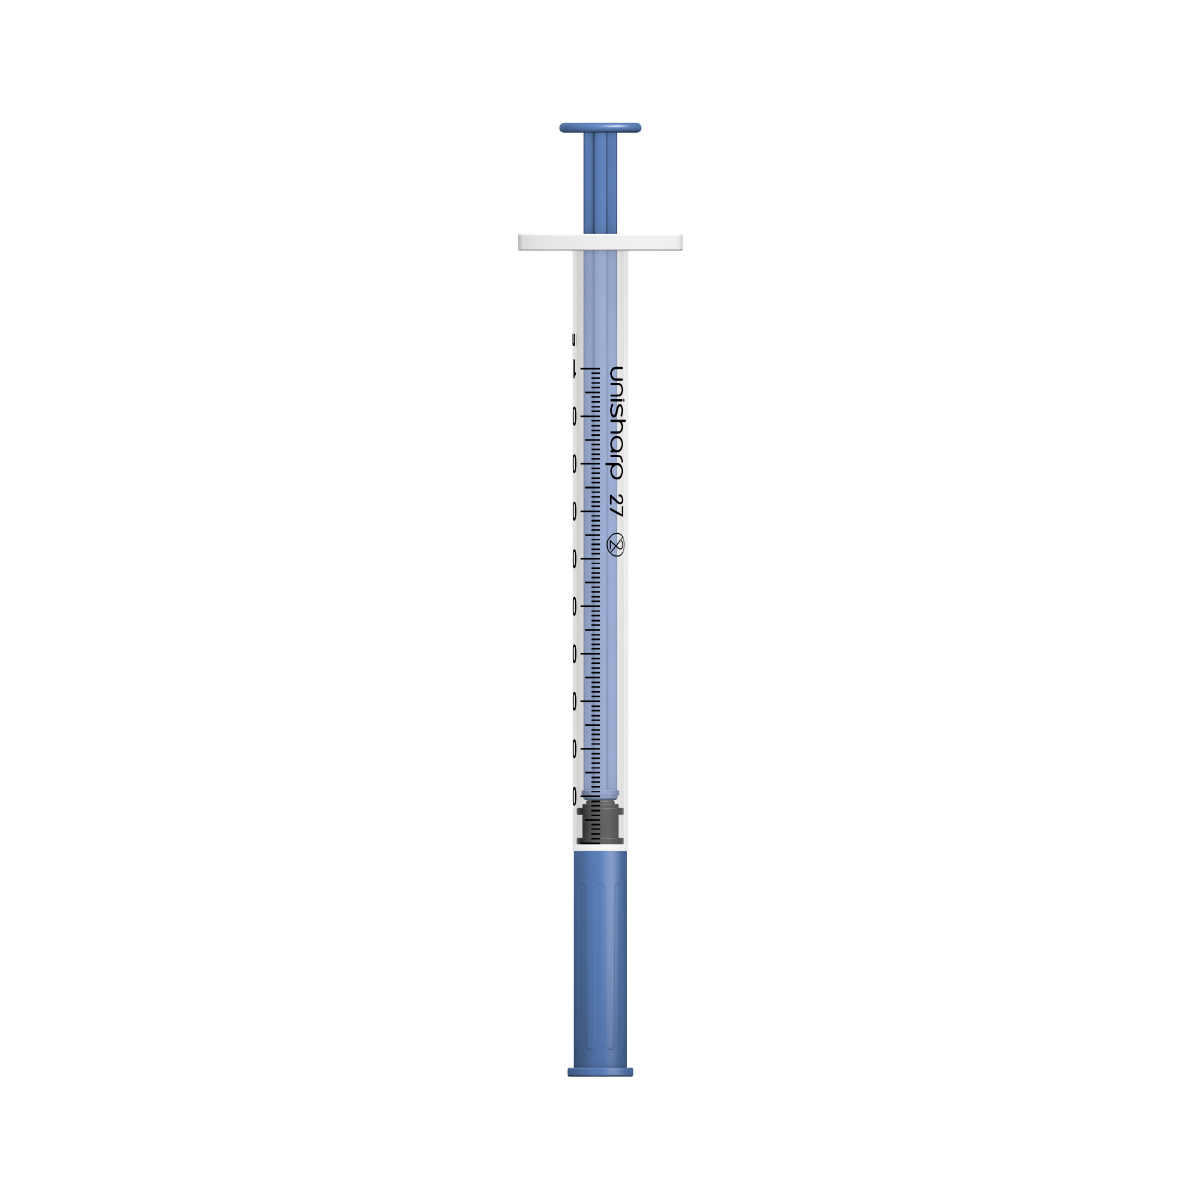 Unisharp 1ml 27G fixed needle syringe: Blue